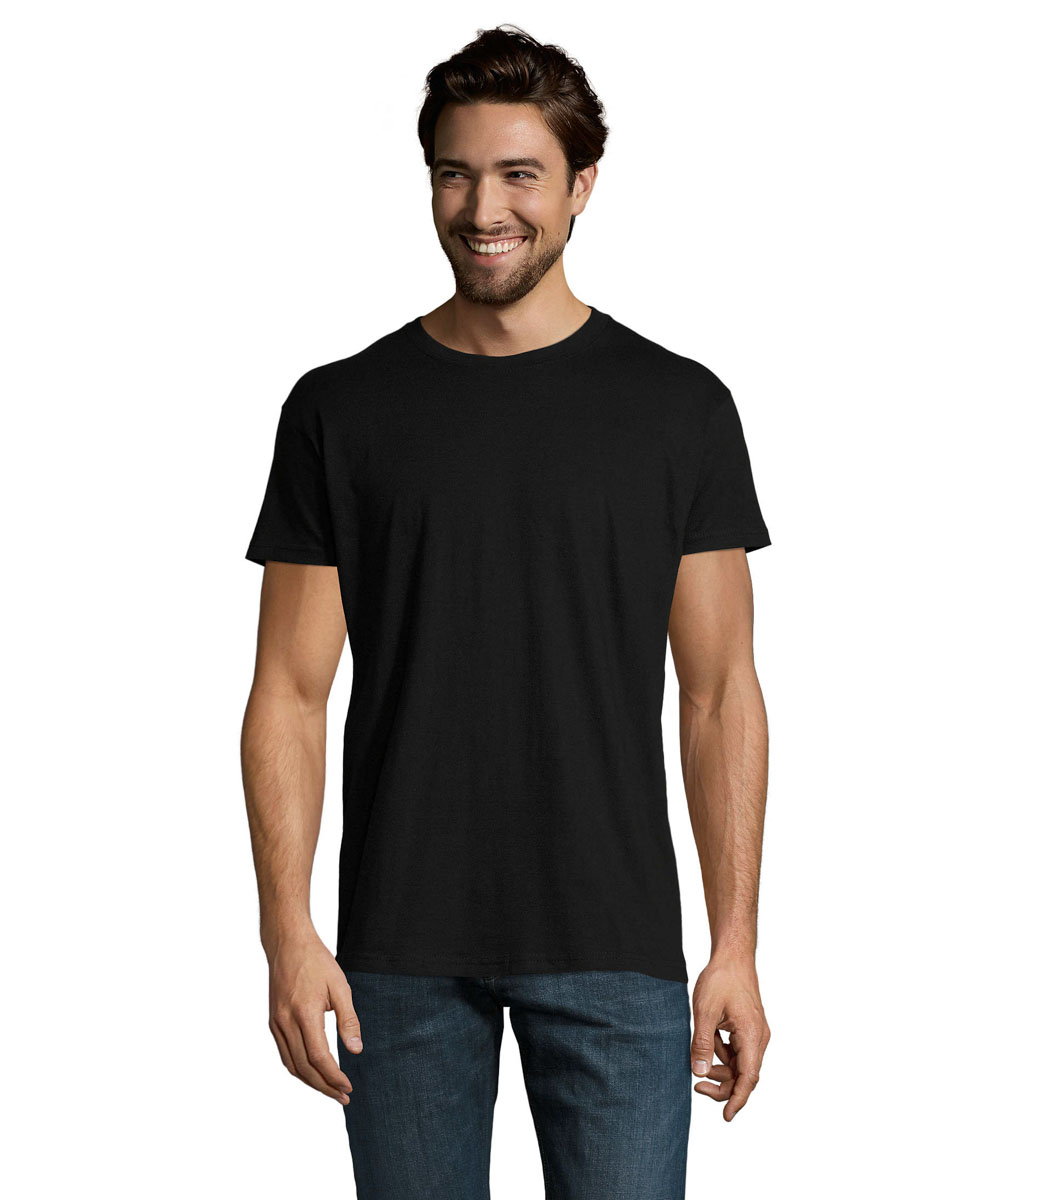 Choisir t shirt homme : quelle taille, coupe, matiere, association